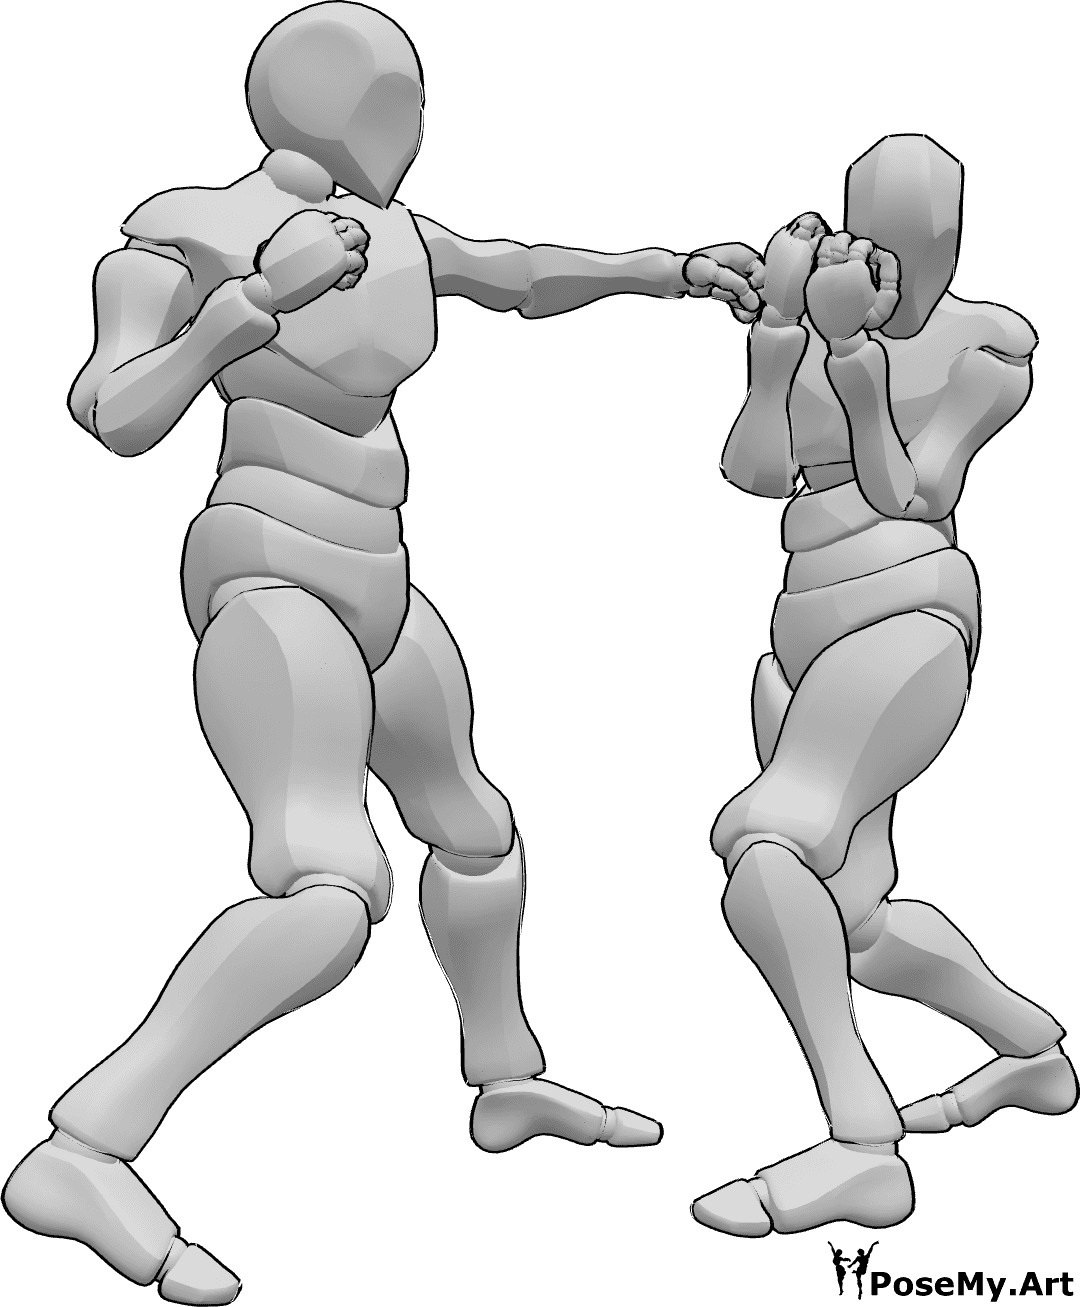 Referência de poses- Pose de gancho de esquerda - Dois homens estão a lutar boxe, um deles lança um gancho de esquerda, o outro esquiva-se do soco